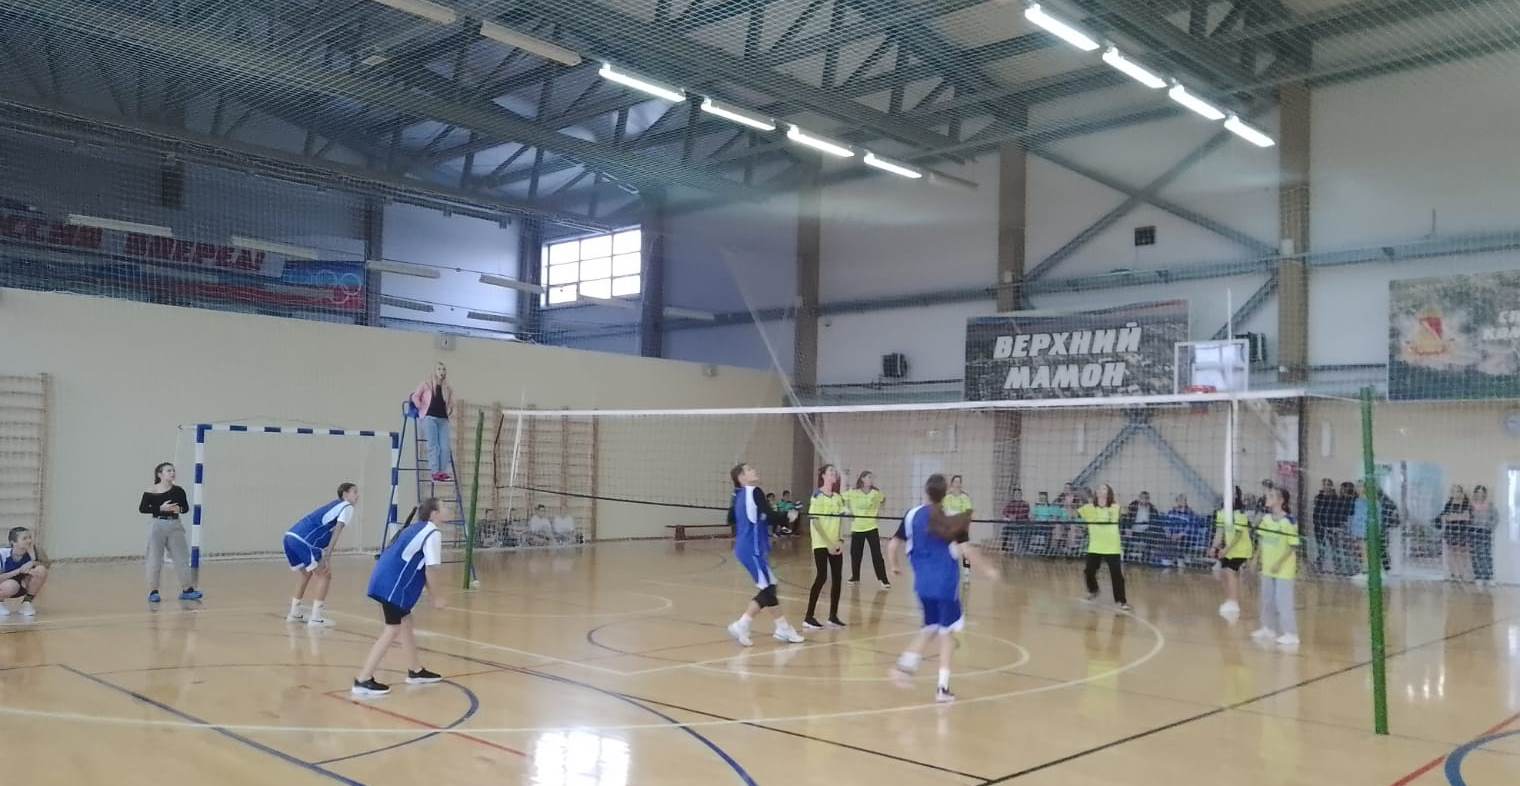 28 октября в ДЮСШ прошло первенство Верхнемамонского района по волейболу среди юношей и девушек 2008 г.р. и младше. В соревнованиях приняли участие 7 команд юношей и 7 команд девушек, всего 102 человека..